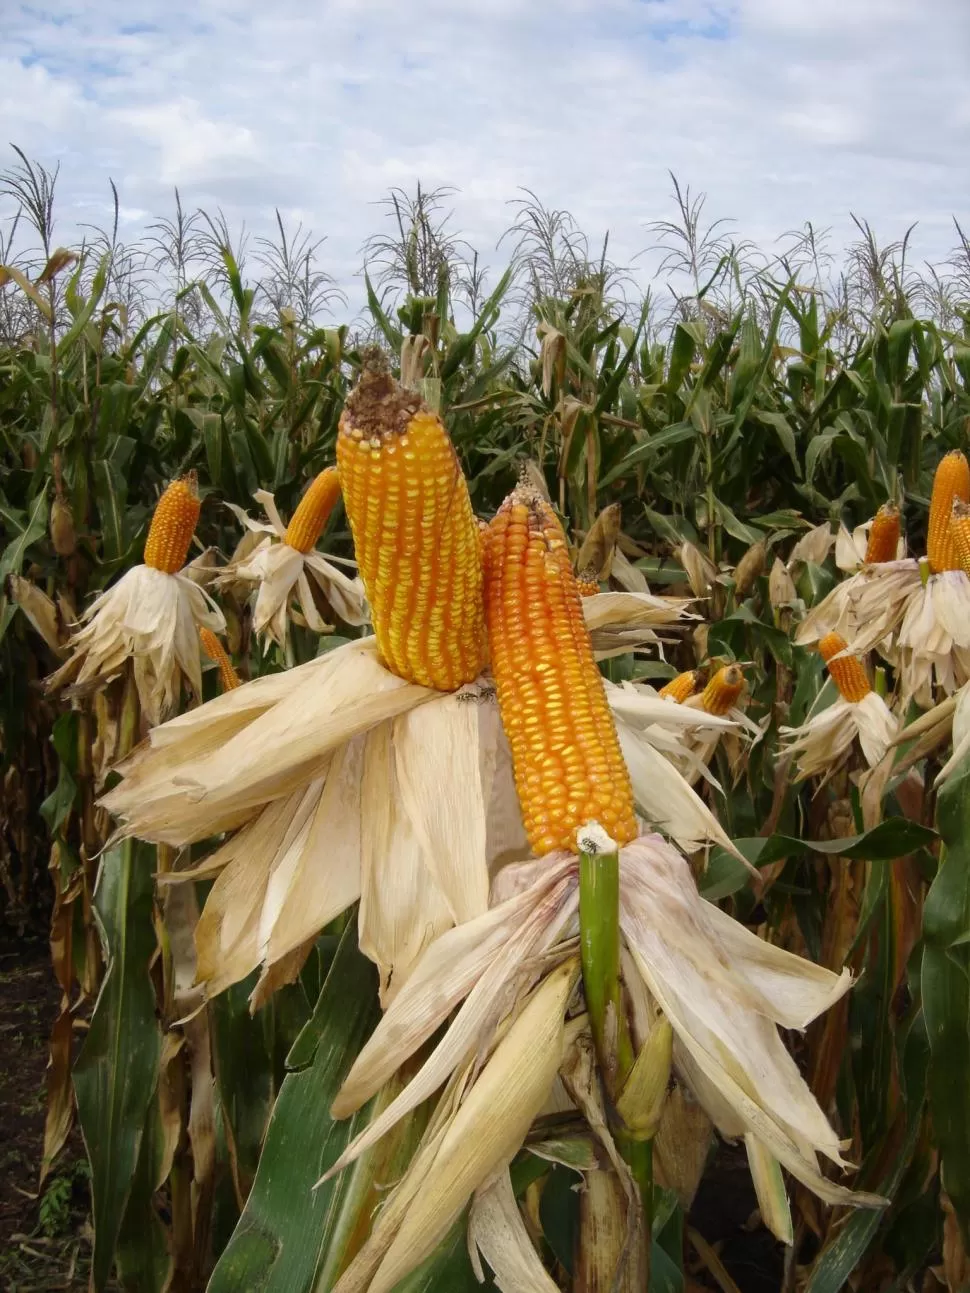 DERIVADO. El maíz es fuente de obtención de etanol para biocombustible. la gaceta / archivo